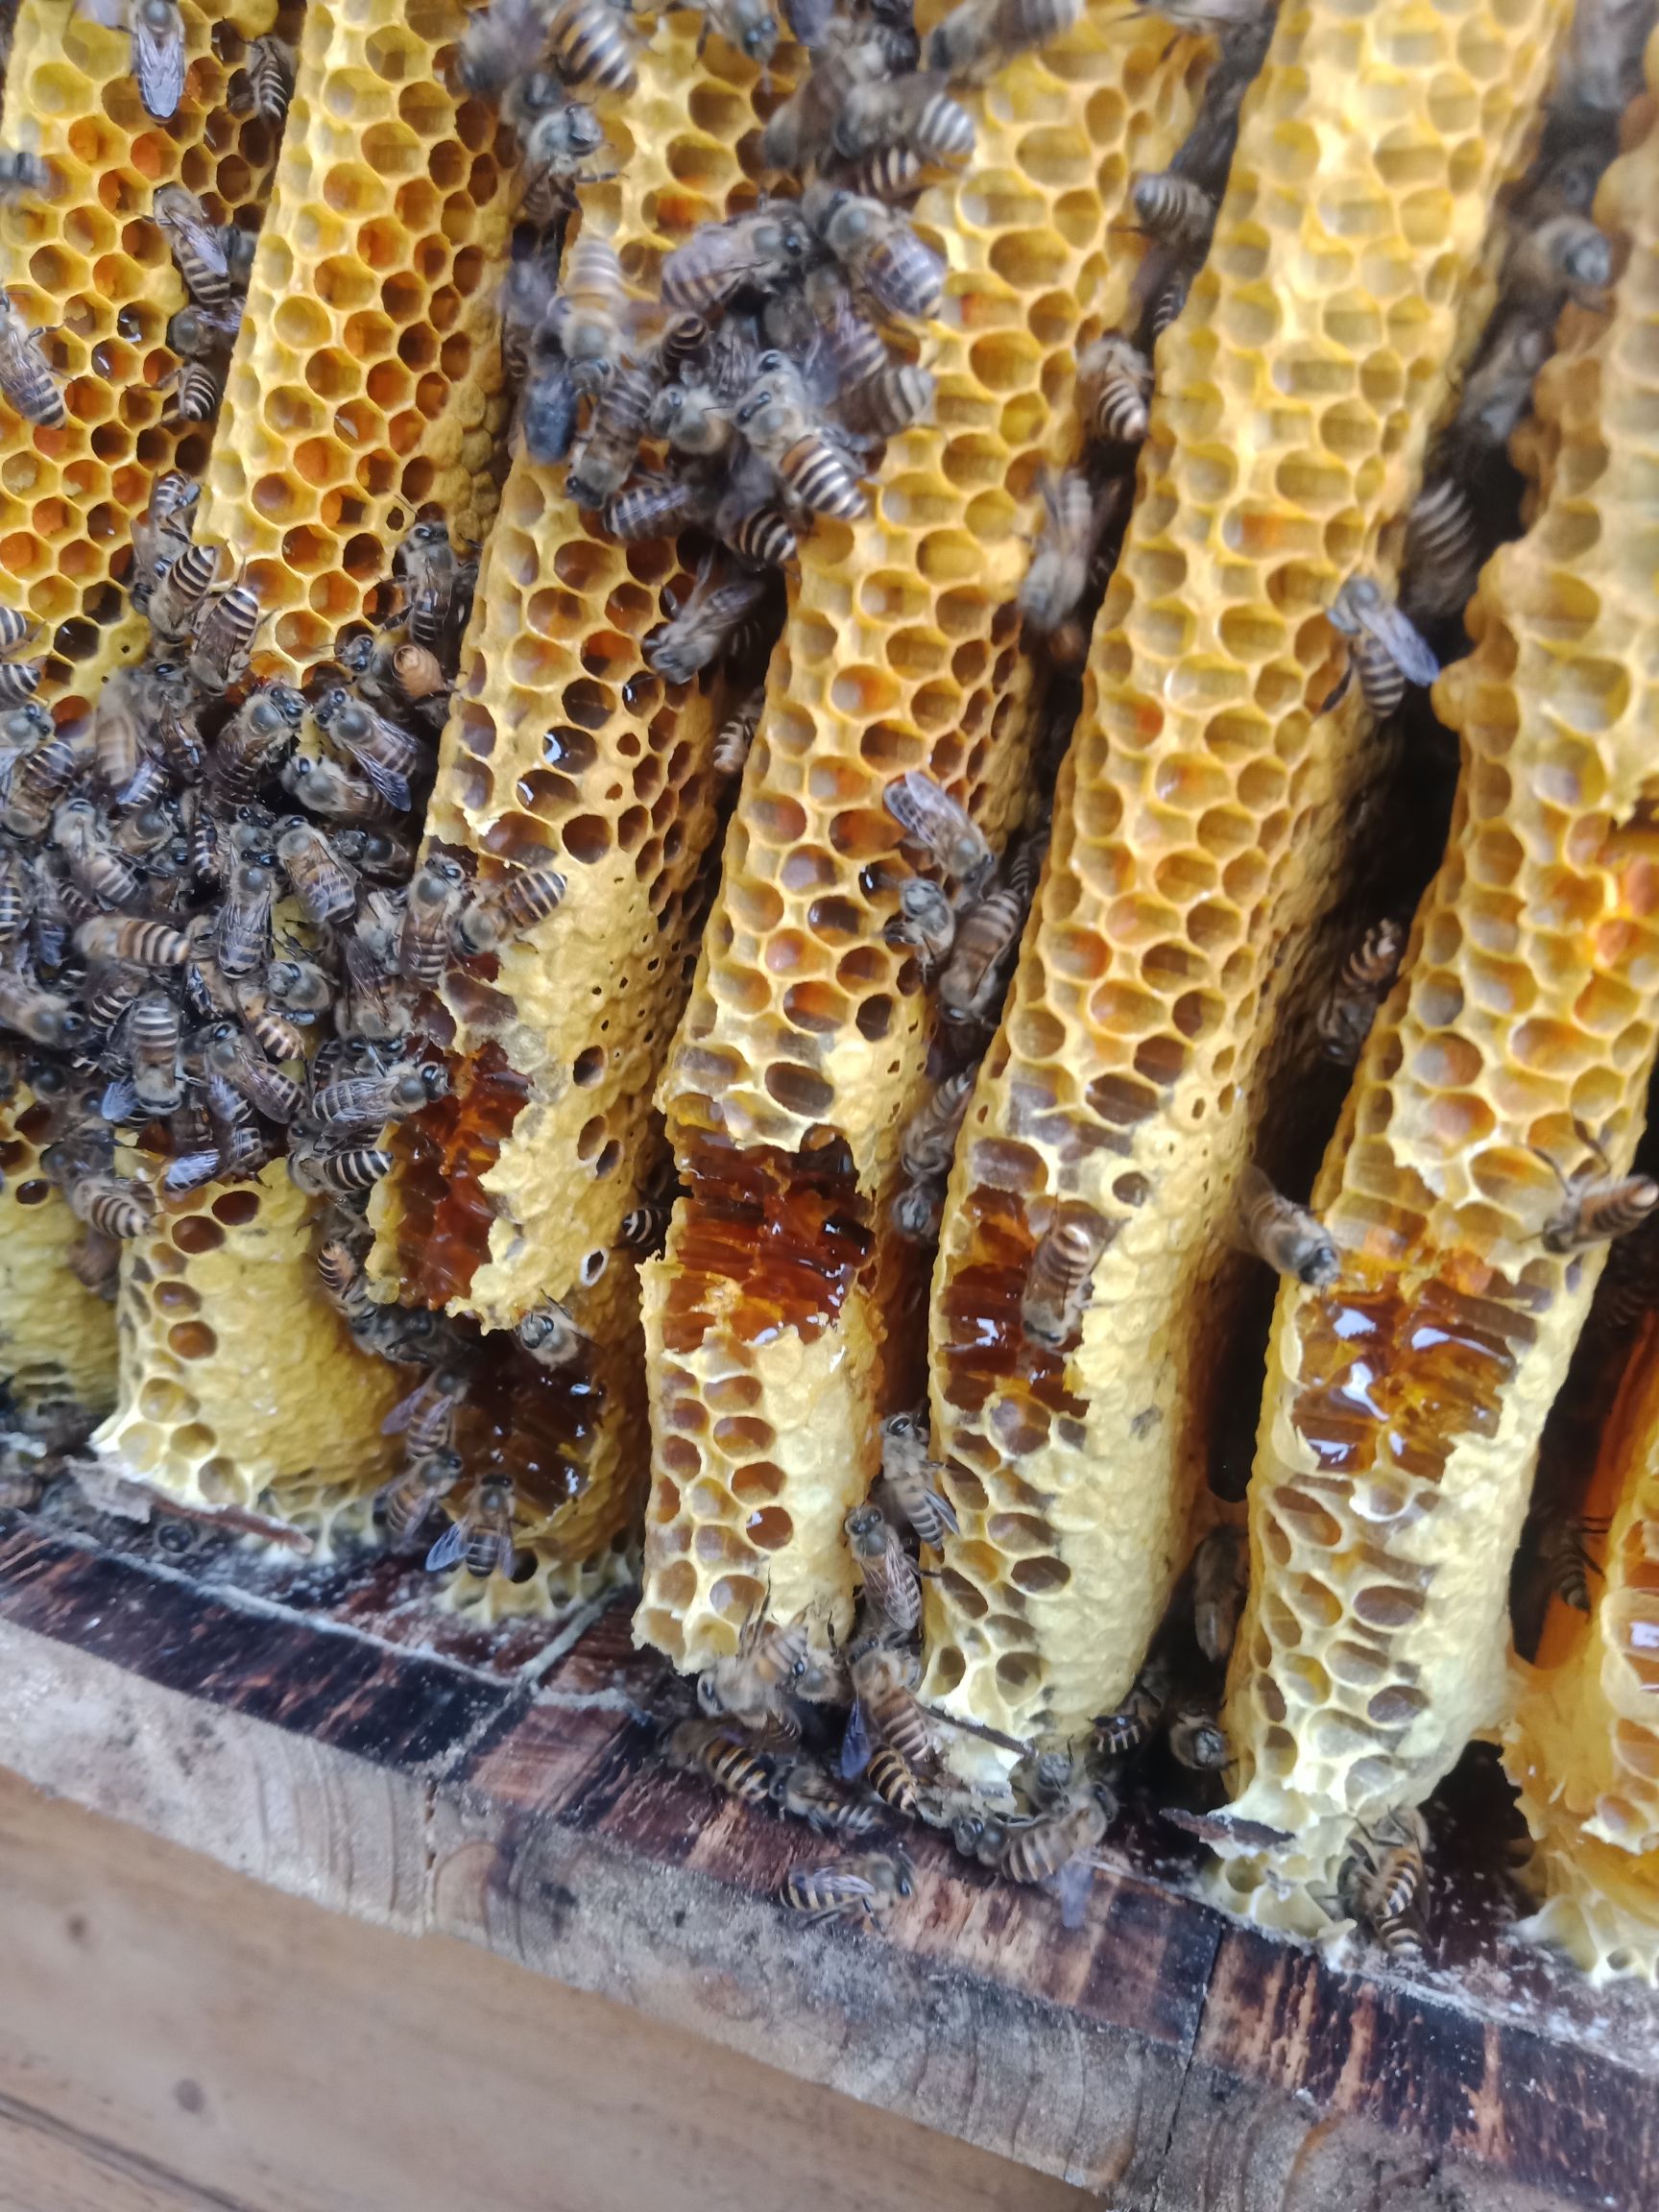 业余家养土蜂蜜,纯天然蜜,我们不生产蜜,只是大自然搬运工.